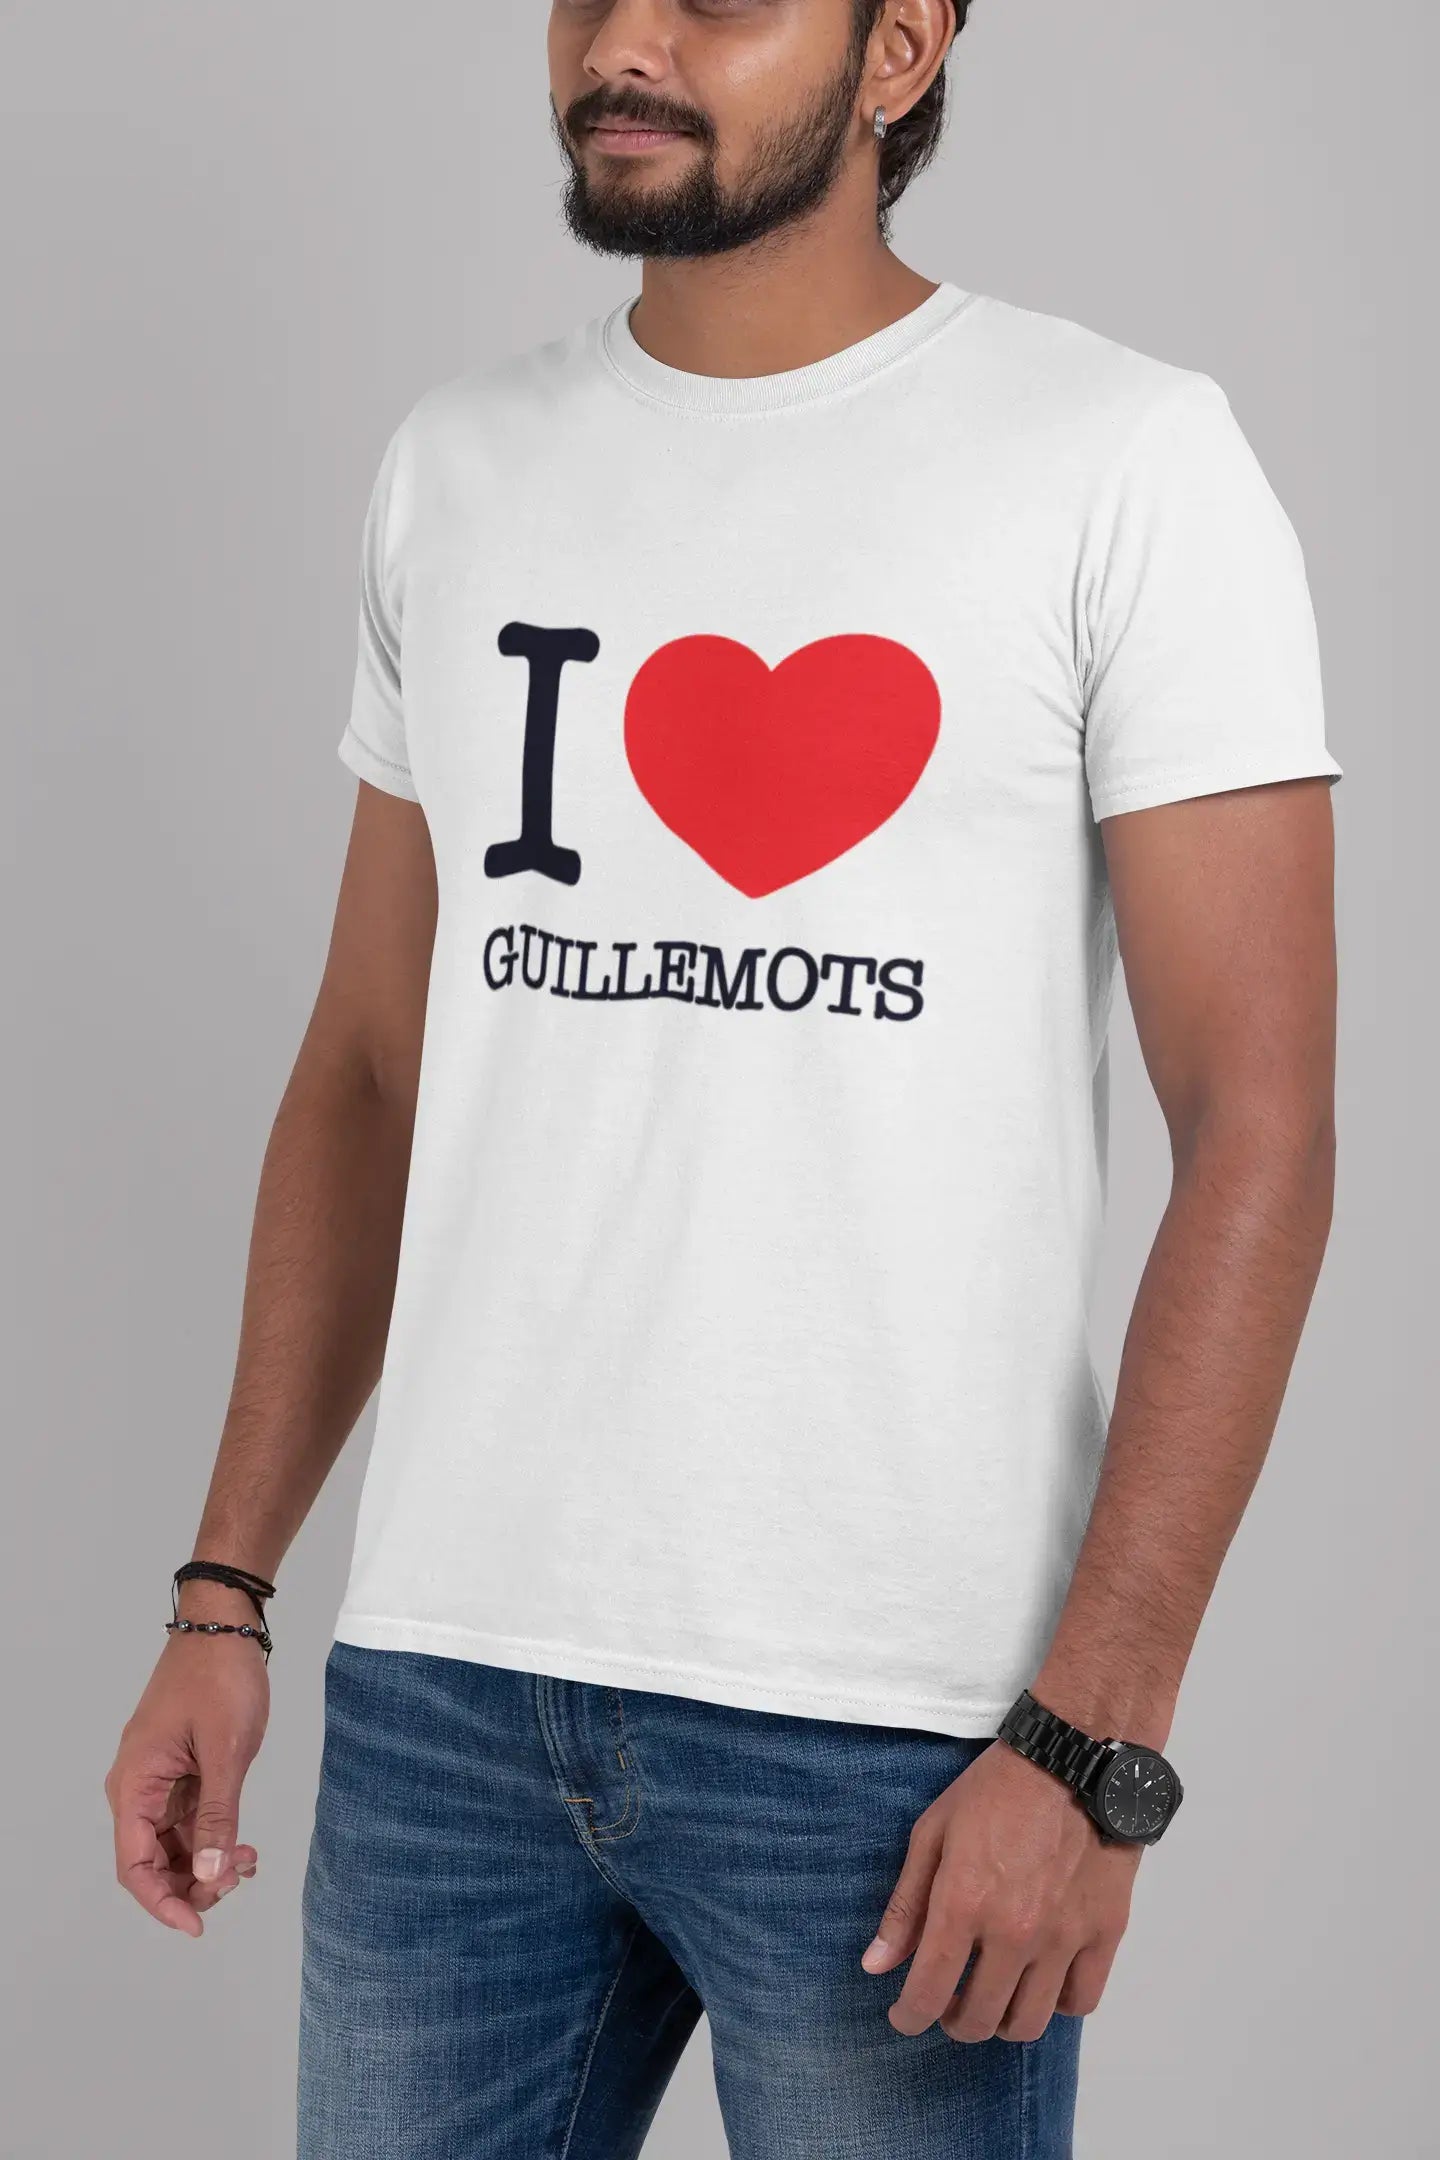 GUILLEMOTS, kurzärmliges Herren-T-Shirt mit Rundhalsausschnitt